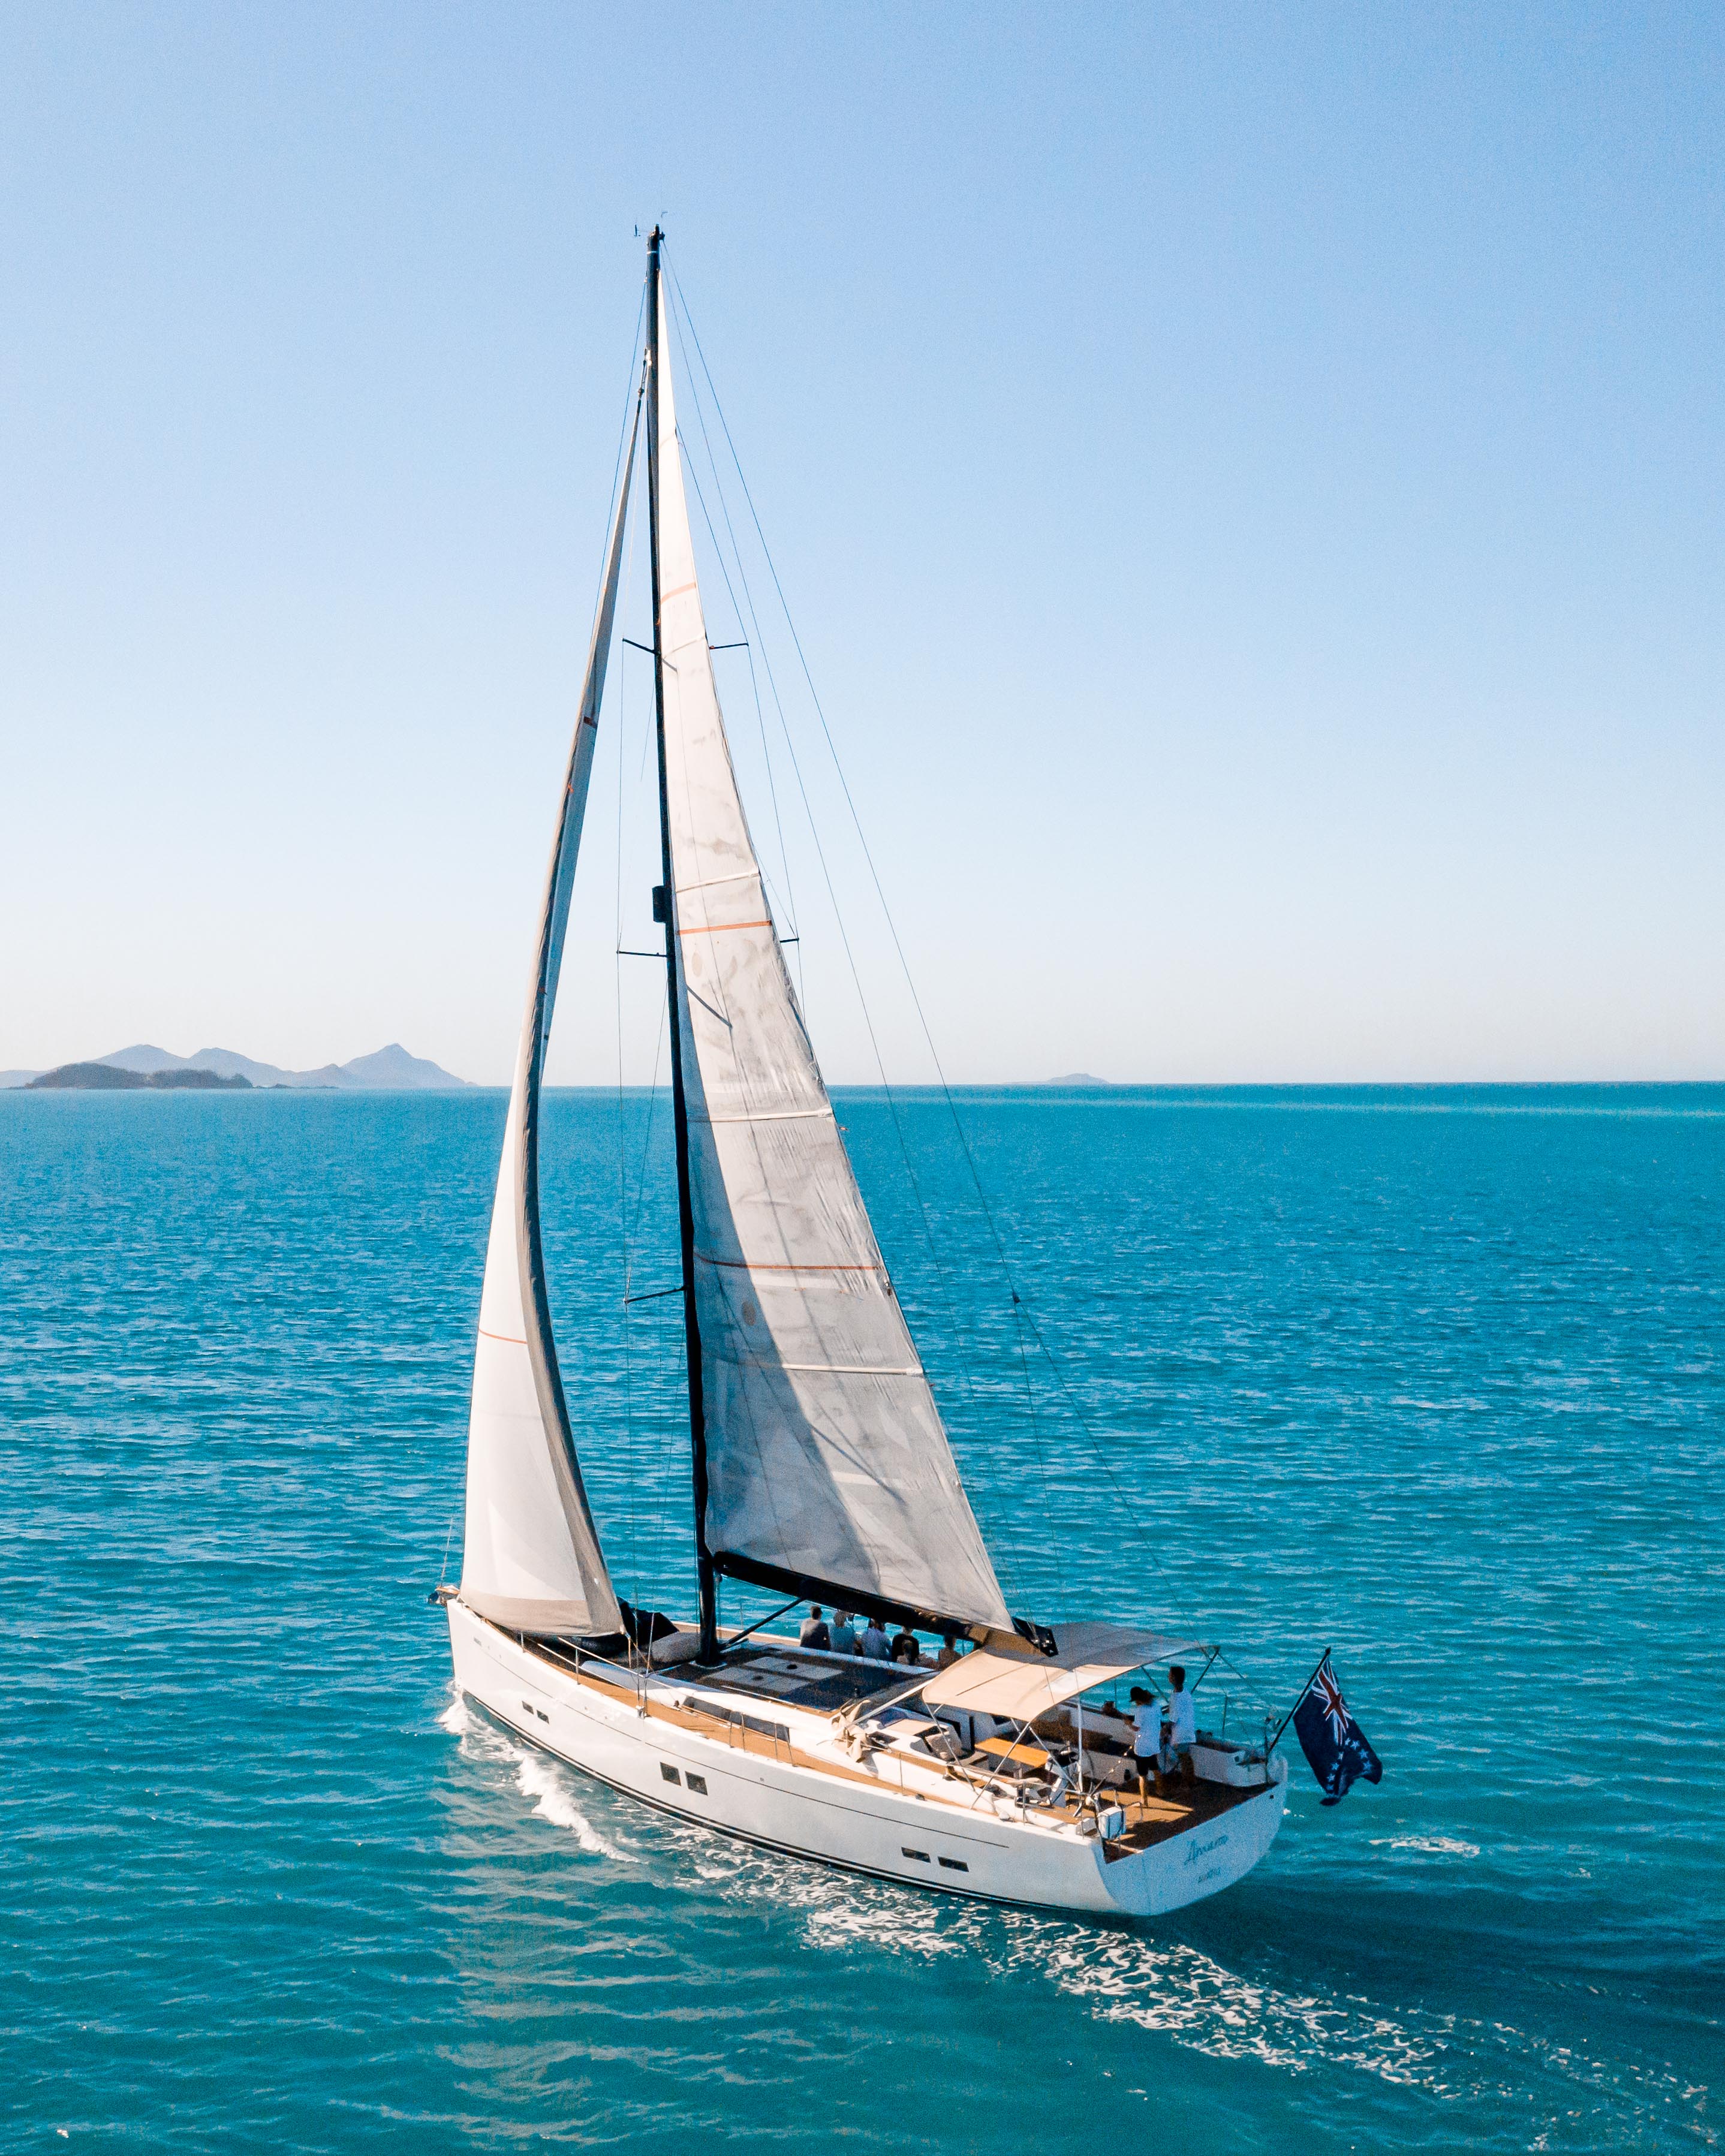 a luxury yacht against a blue sky